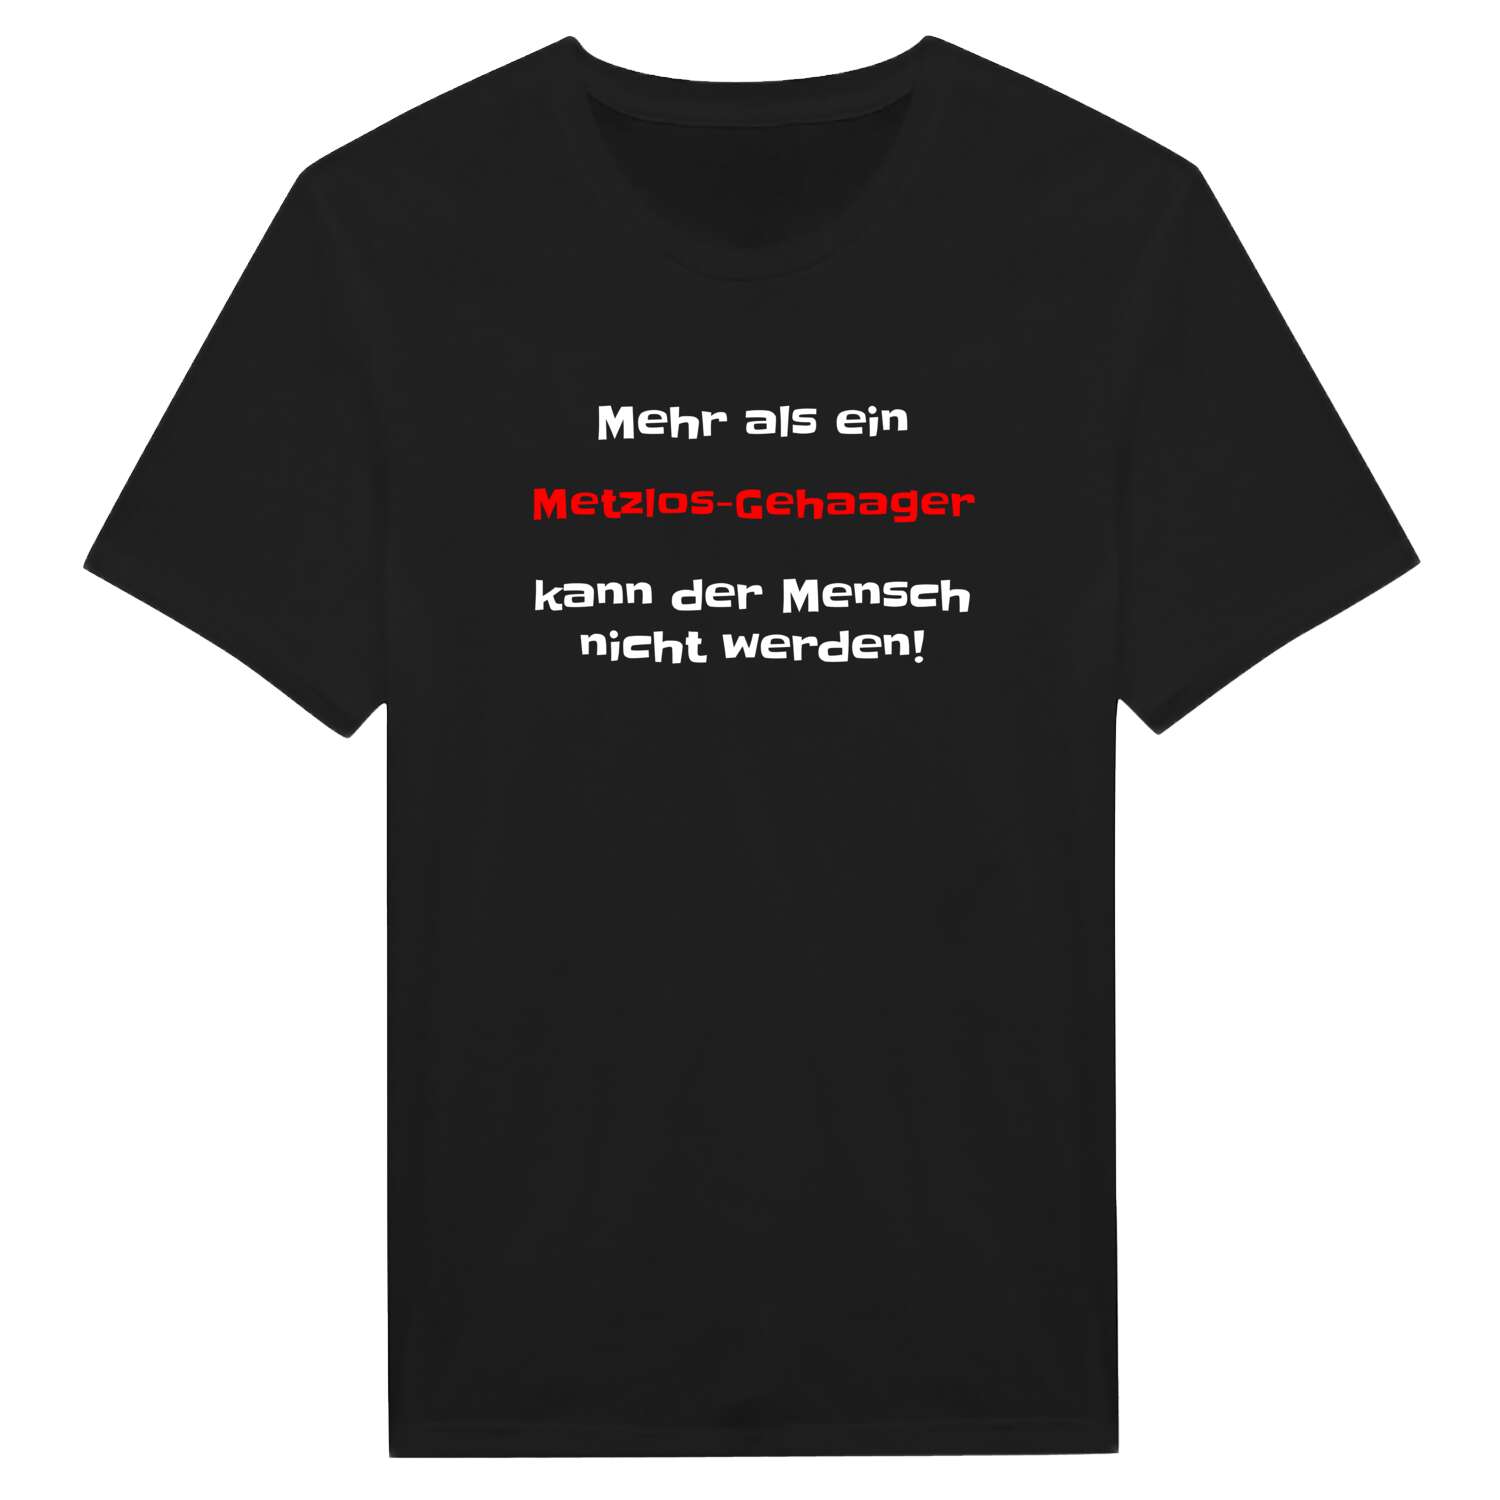 Metzlos-Gehaag T-Shirt »Mehr als ein«